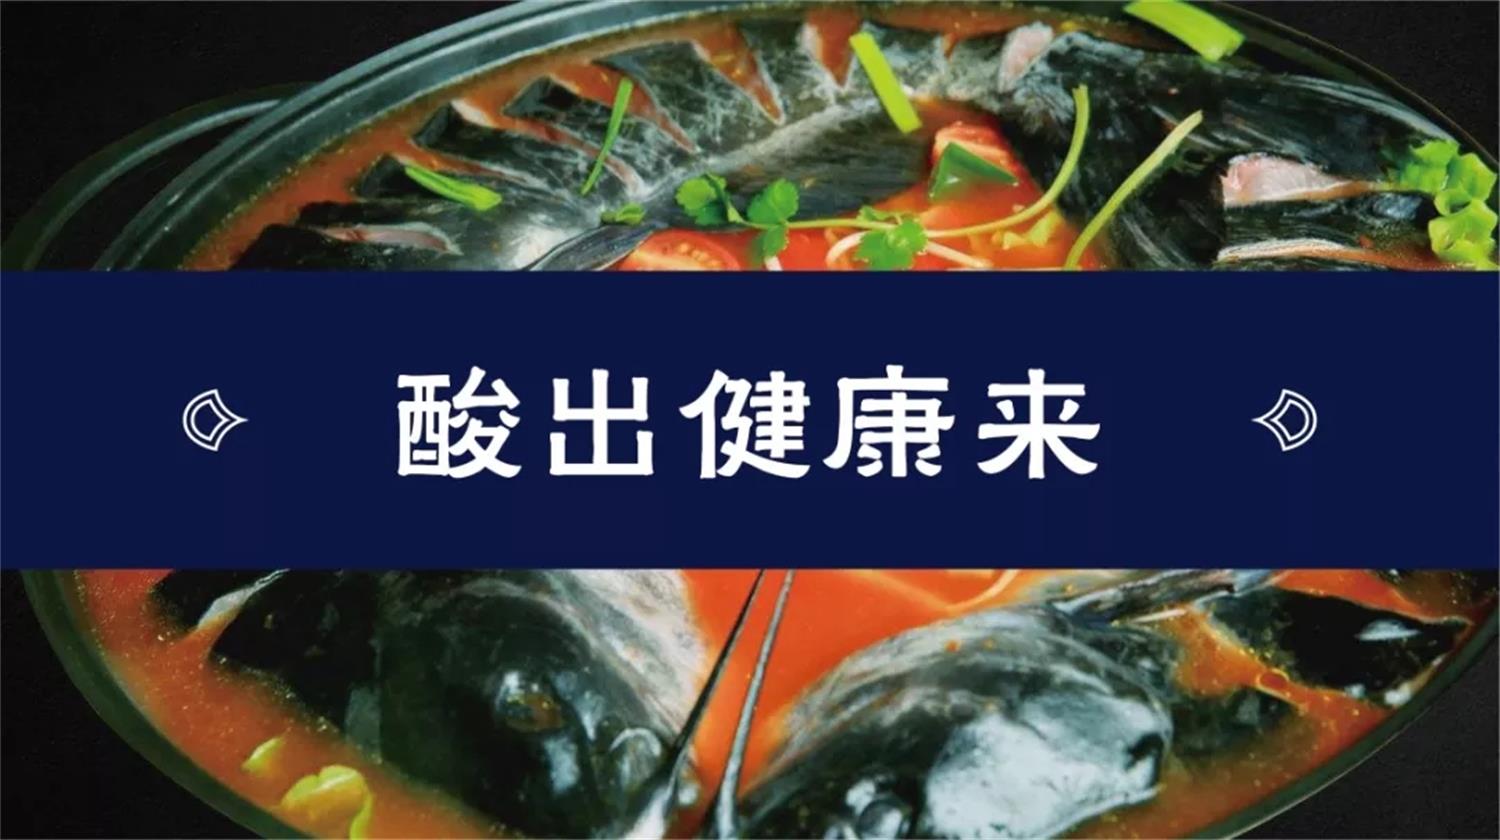 东莞酸菜鱼餐饮连锁品牌友黔部落广告语创作